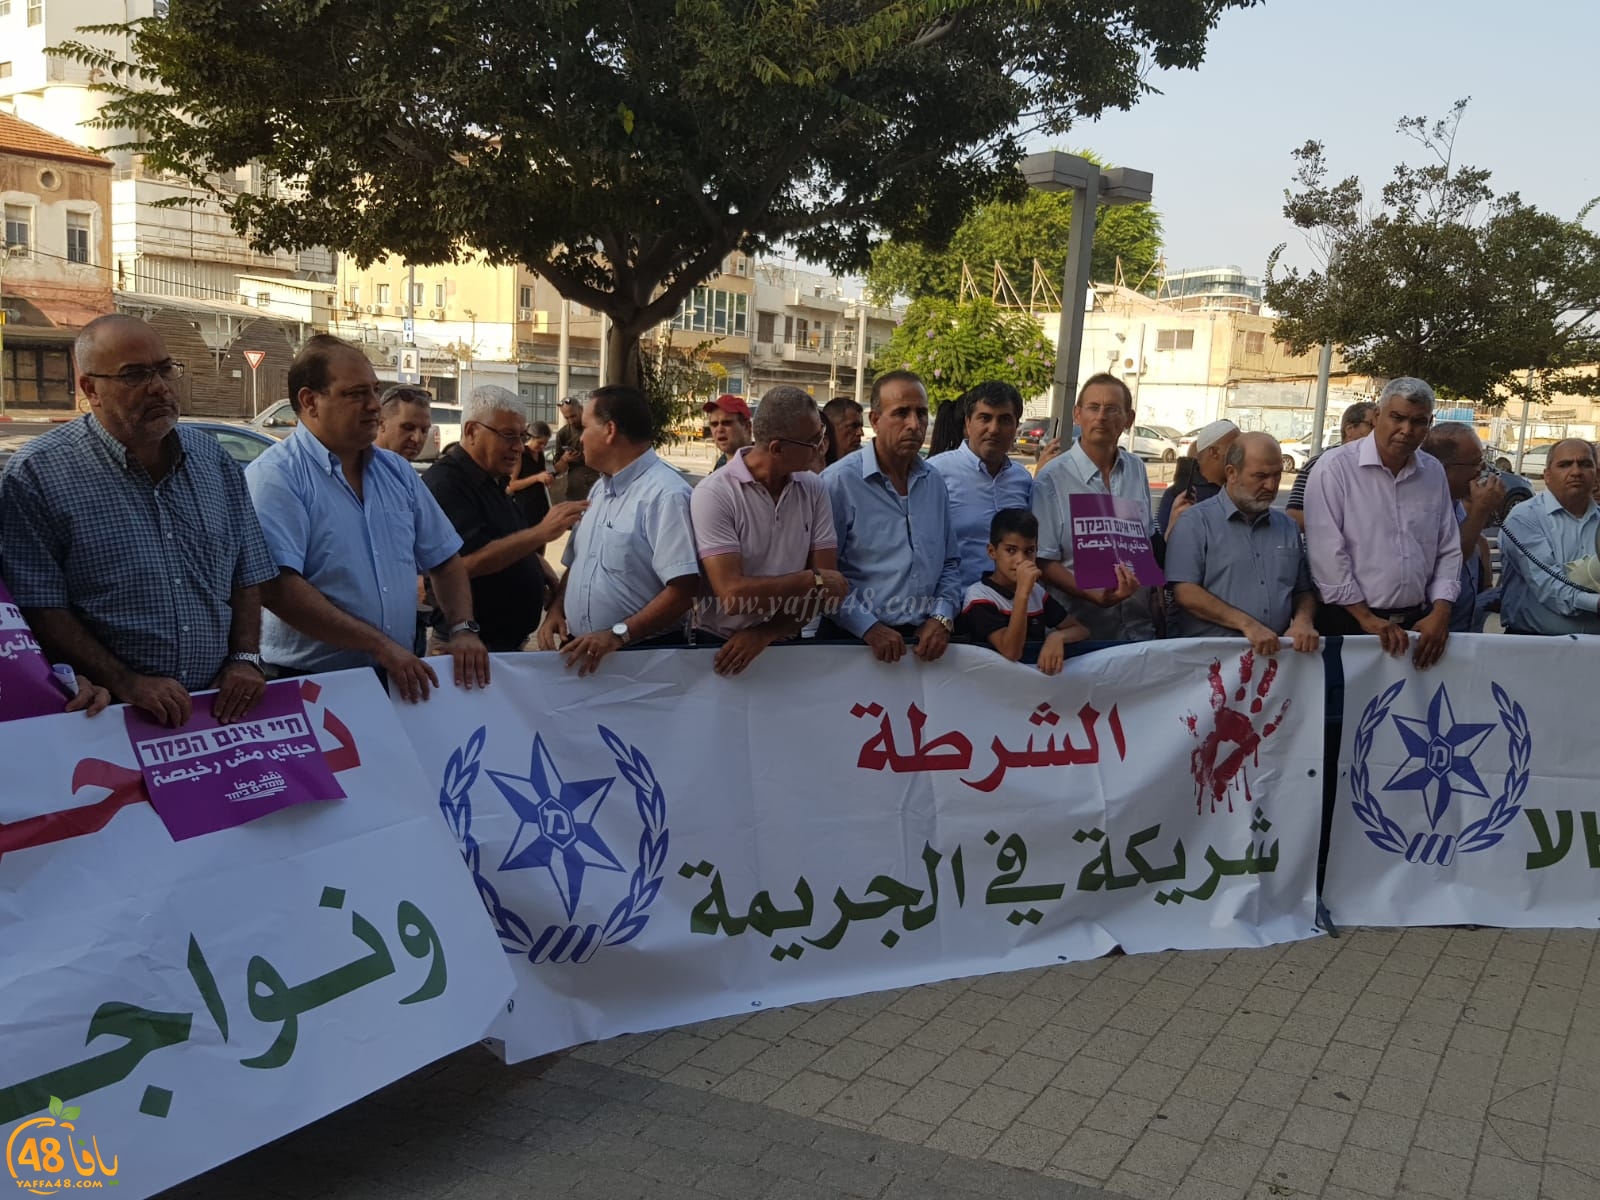  صور: مشاركة ضعيفة بتظاهرة احتجاجية ضد تقاعس الشرطة في مدينة يافا 